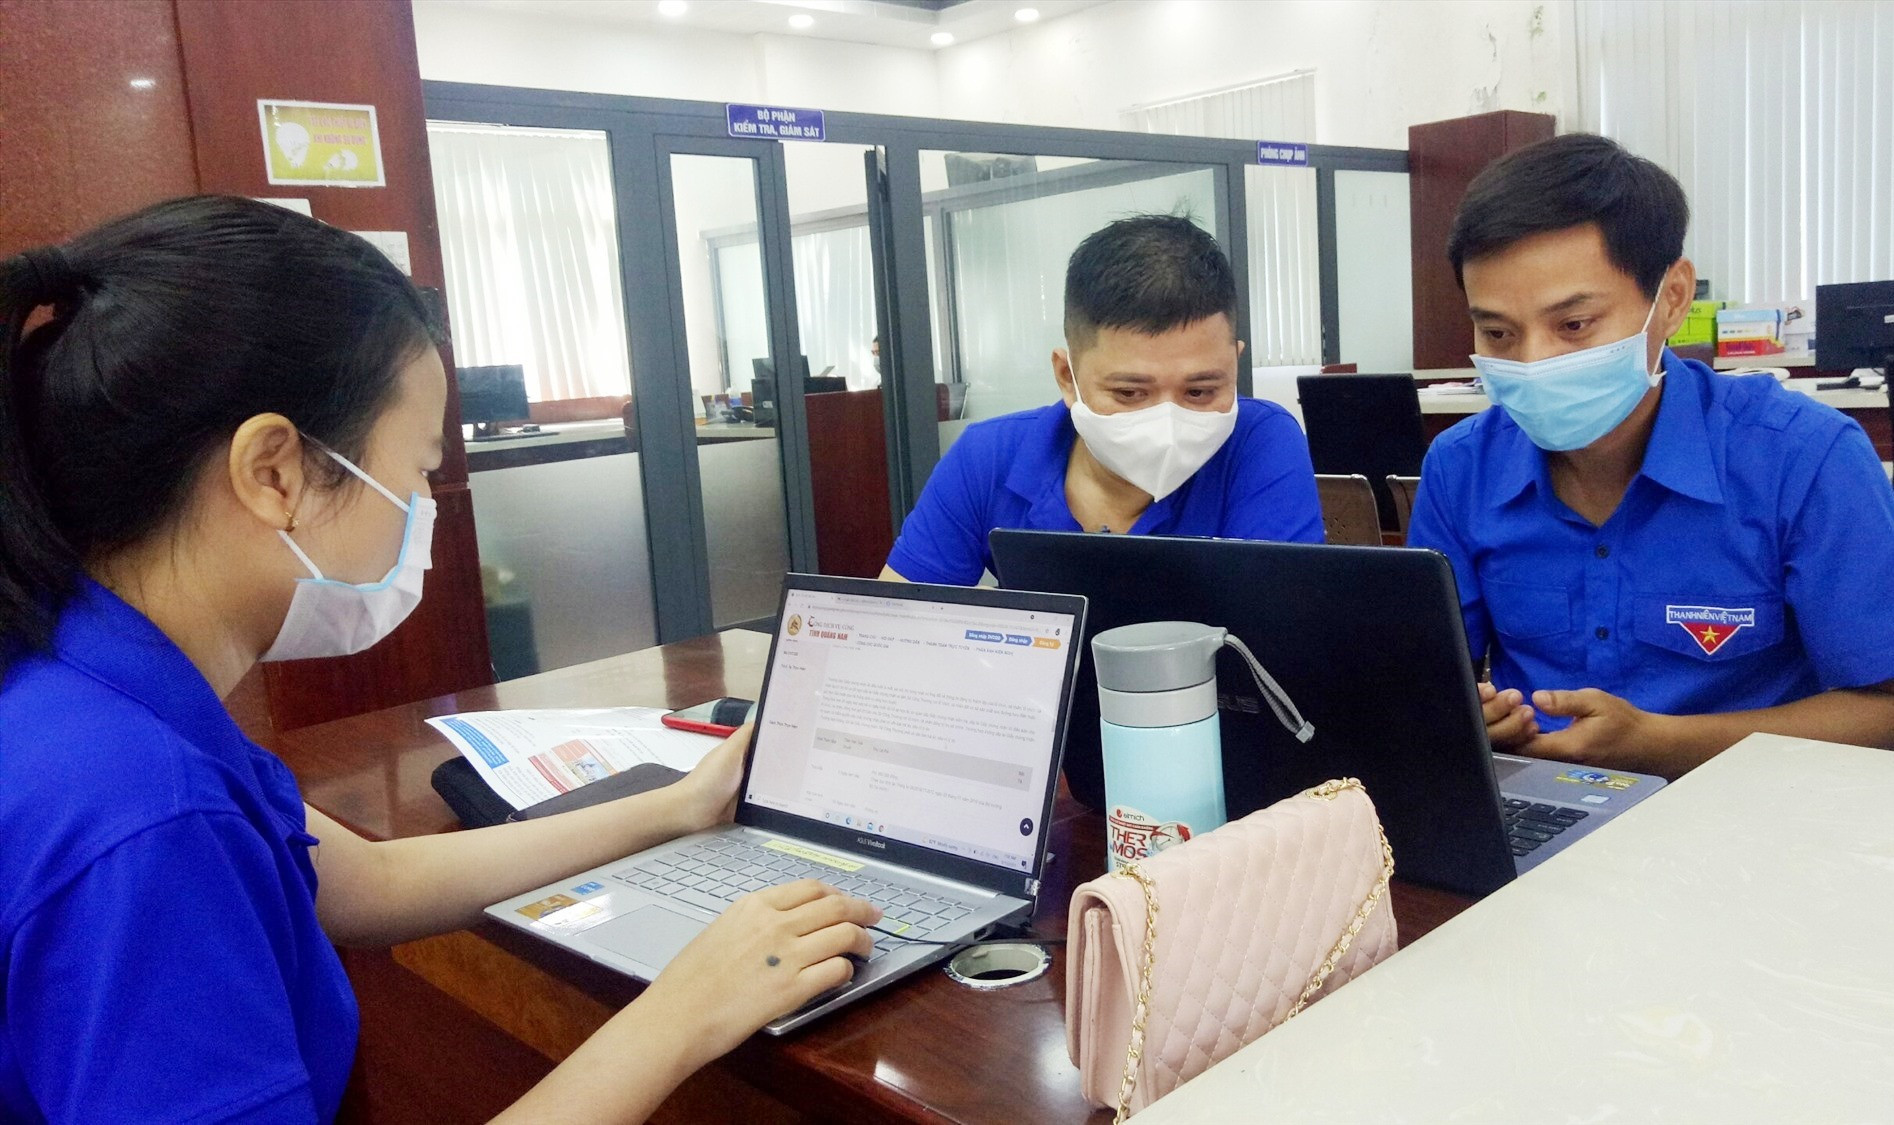 Đoàn viên thanh niên hỗ trợ thực hiện dịch vụ công trực tuyến tại Trung tâm phục vụ hành chính công Quảng Nam. Ảnh: A.B